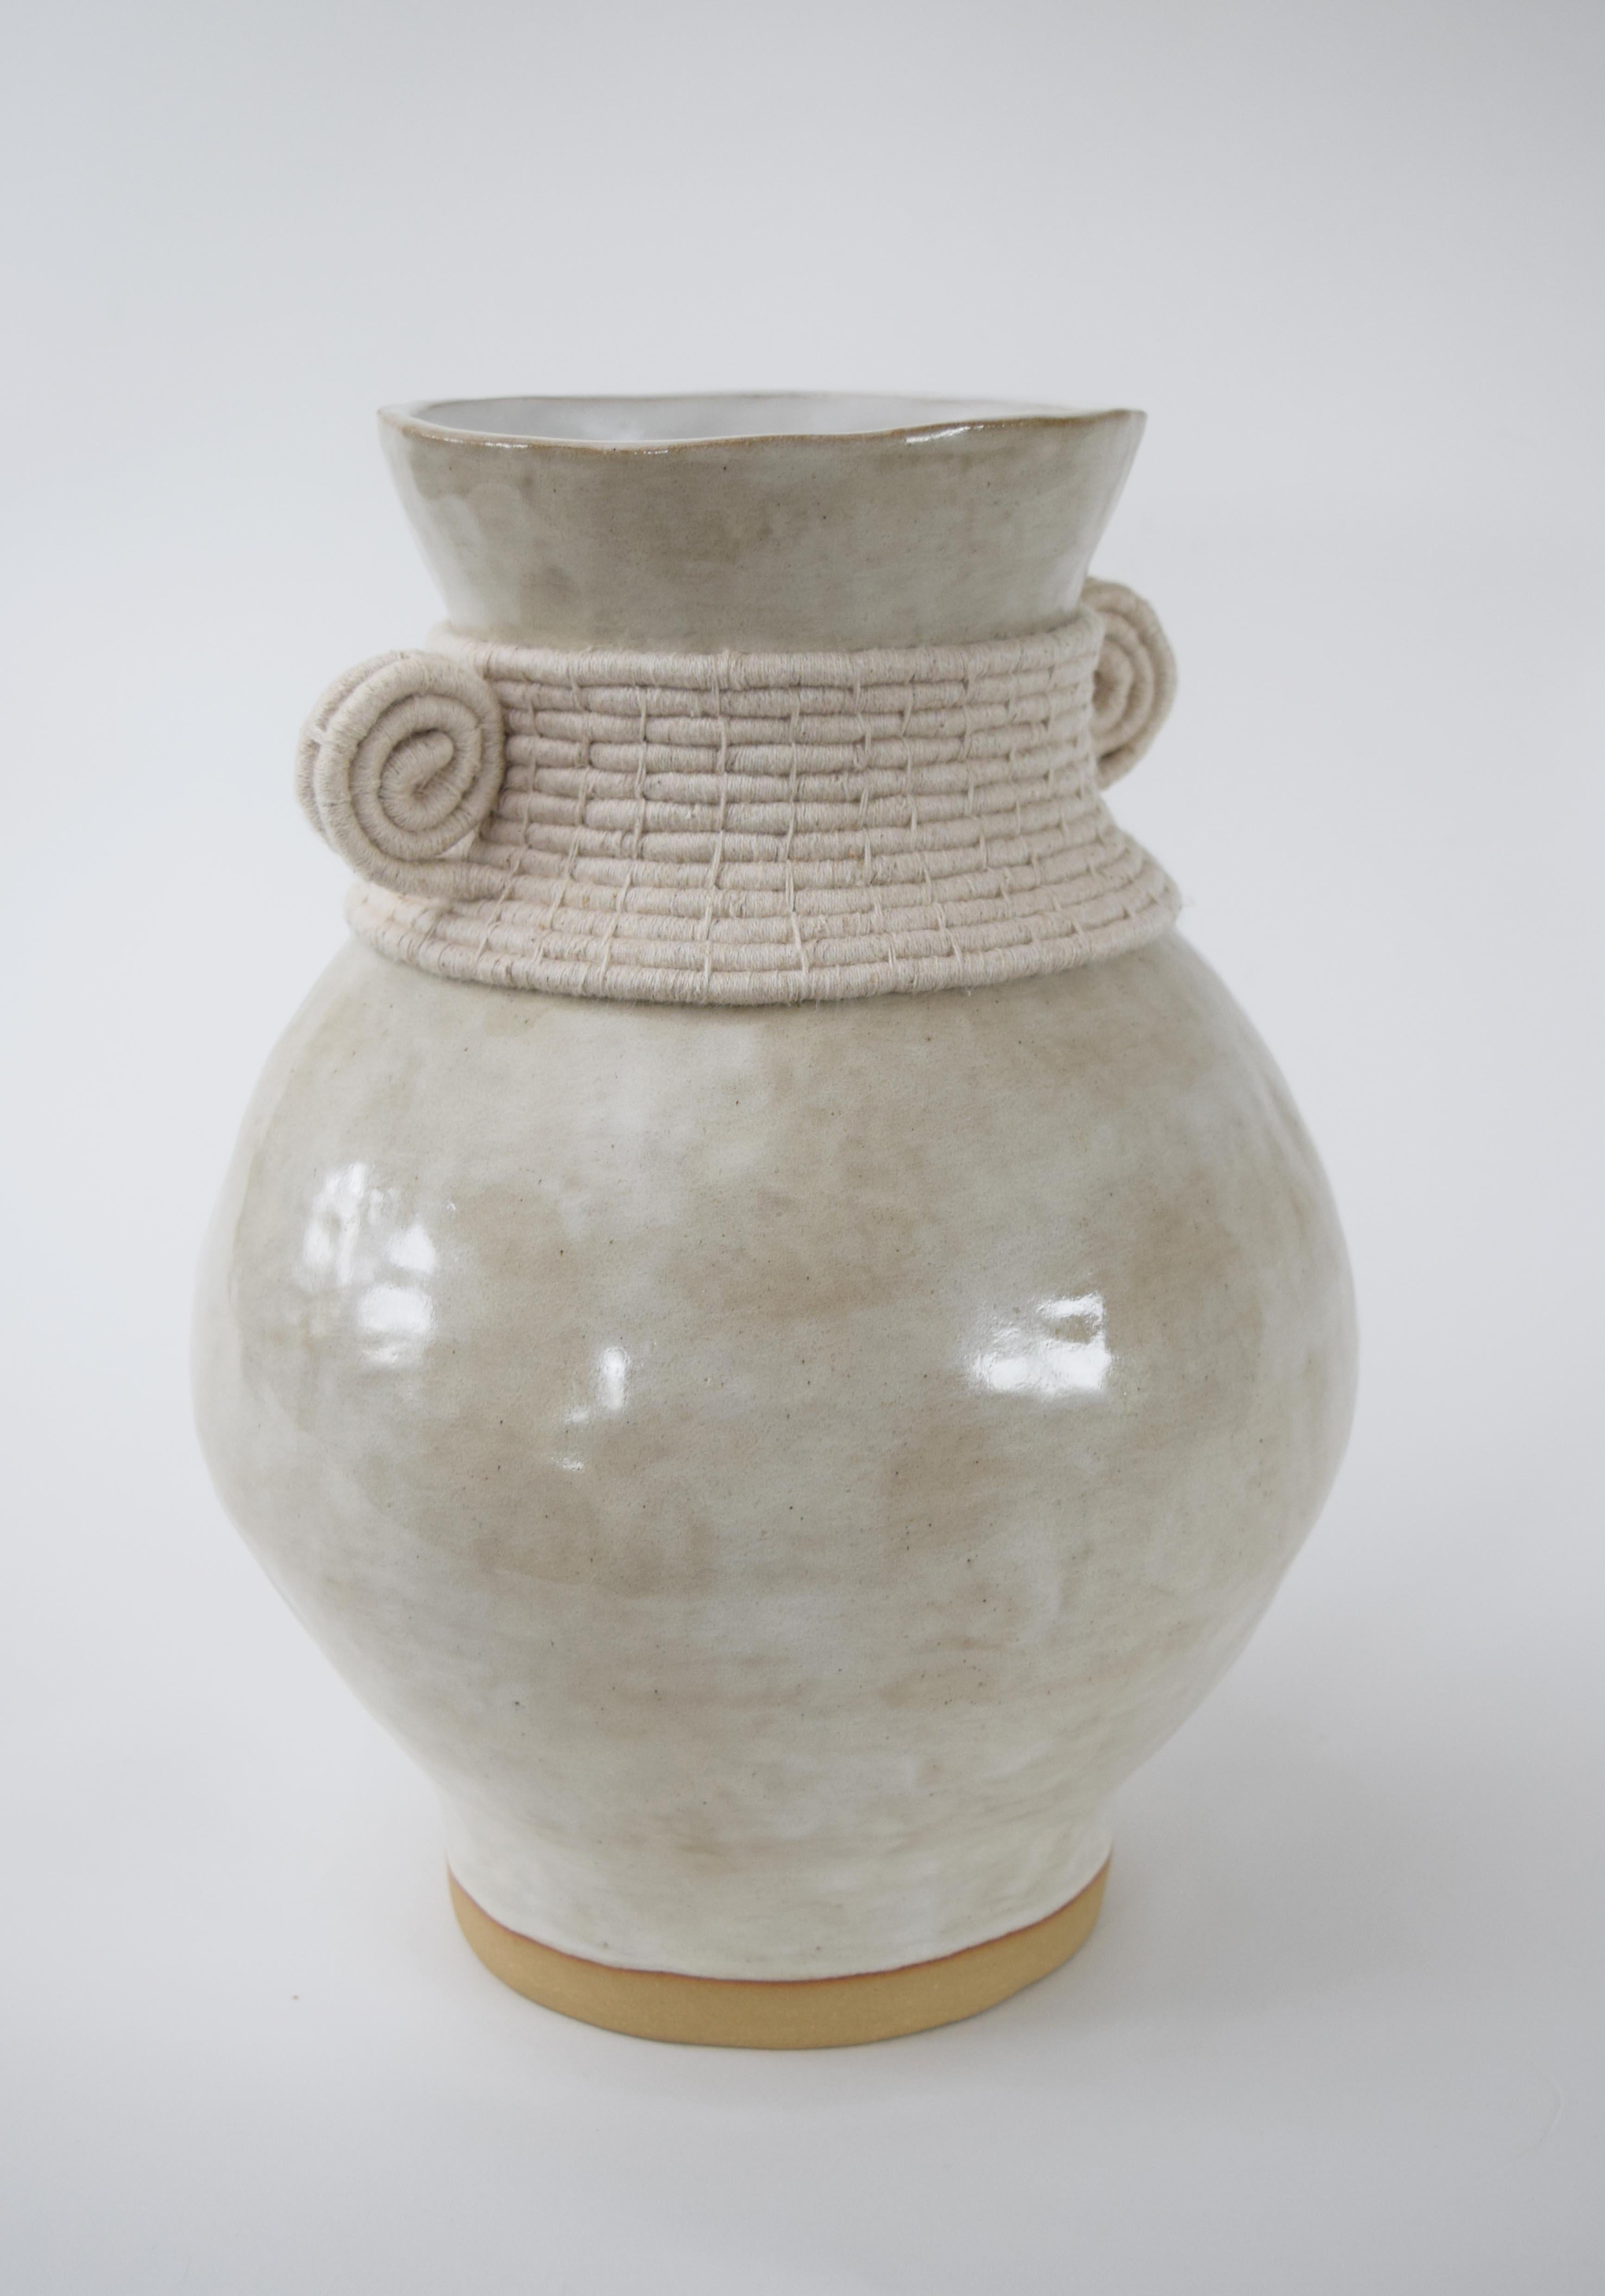 Vase #796 von Karen Gayle Tinney

Handgeformte Vase aus Steingut mit cremefarbener Glasur. Die Außenseite ist aus gewebter cremefarbener Baumwolle. Die Innenseite der Vase ist glasiert, die Vase kann Wasser aufnehmen.

13 